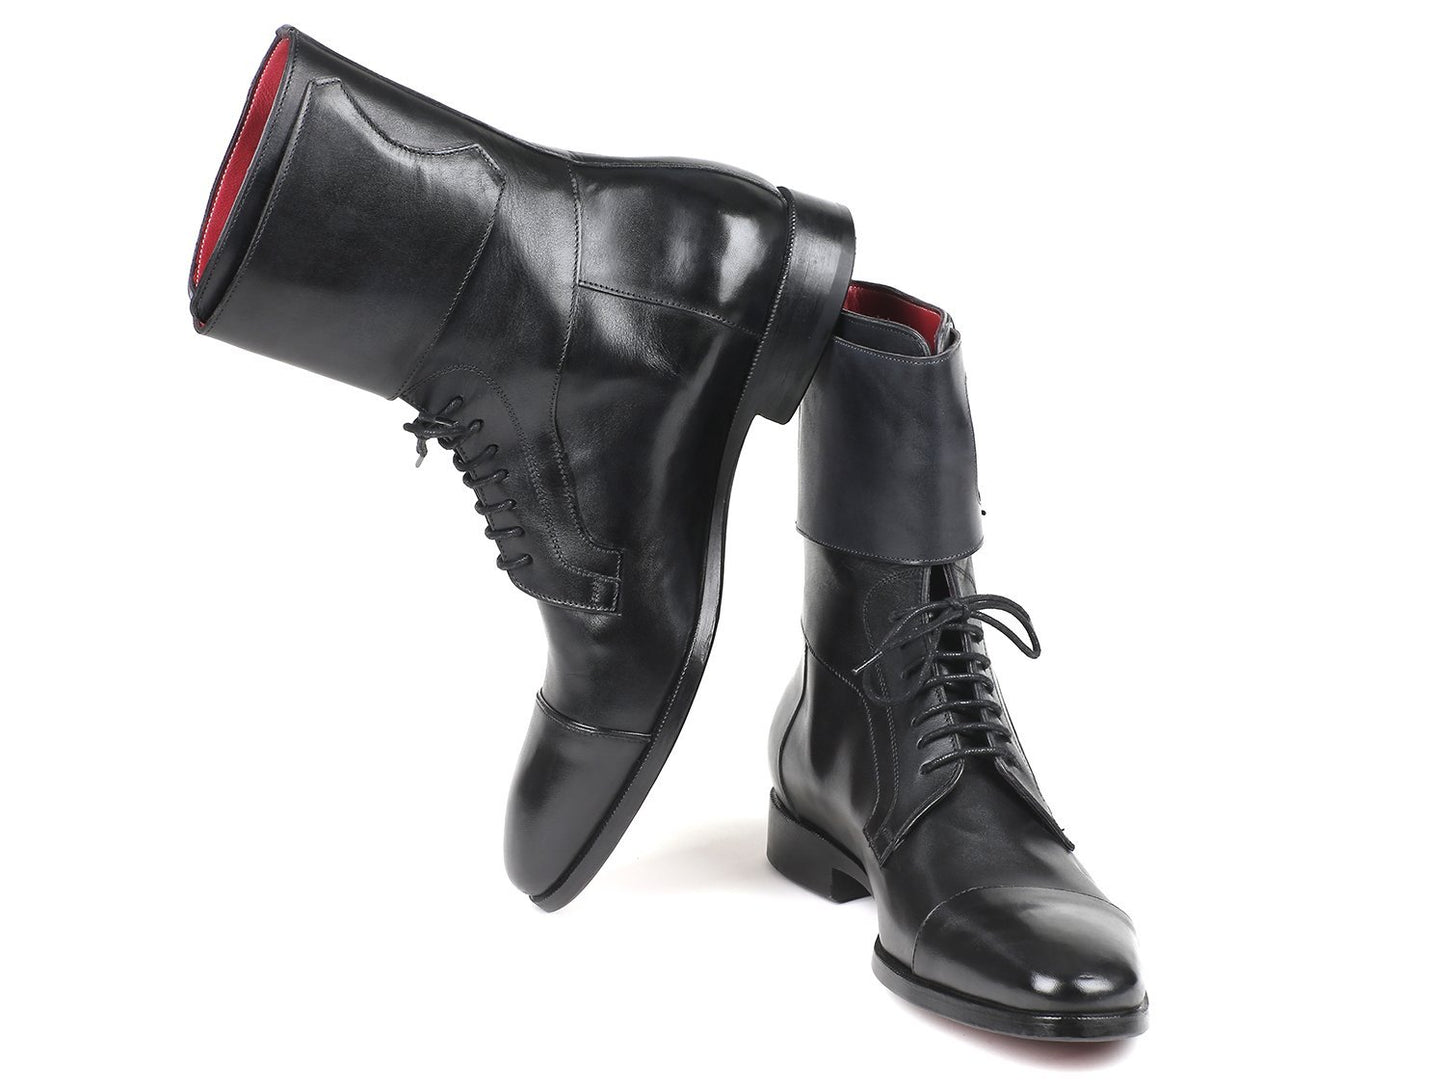 TEEK - Paul Parkman High Black Calfskin Boots SHOES theteekdotcom   